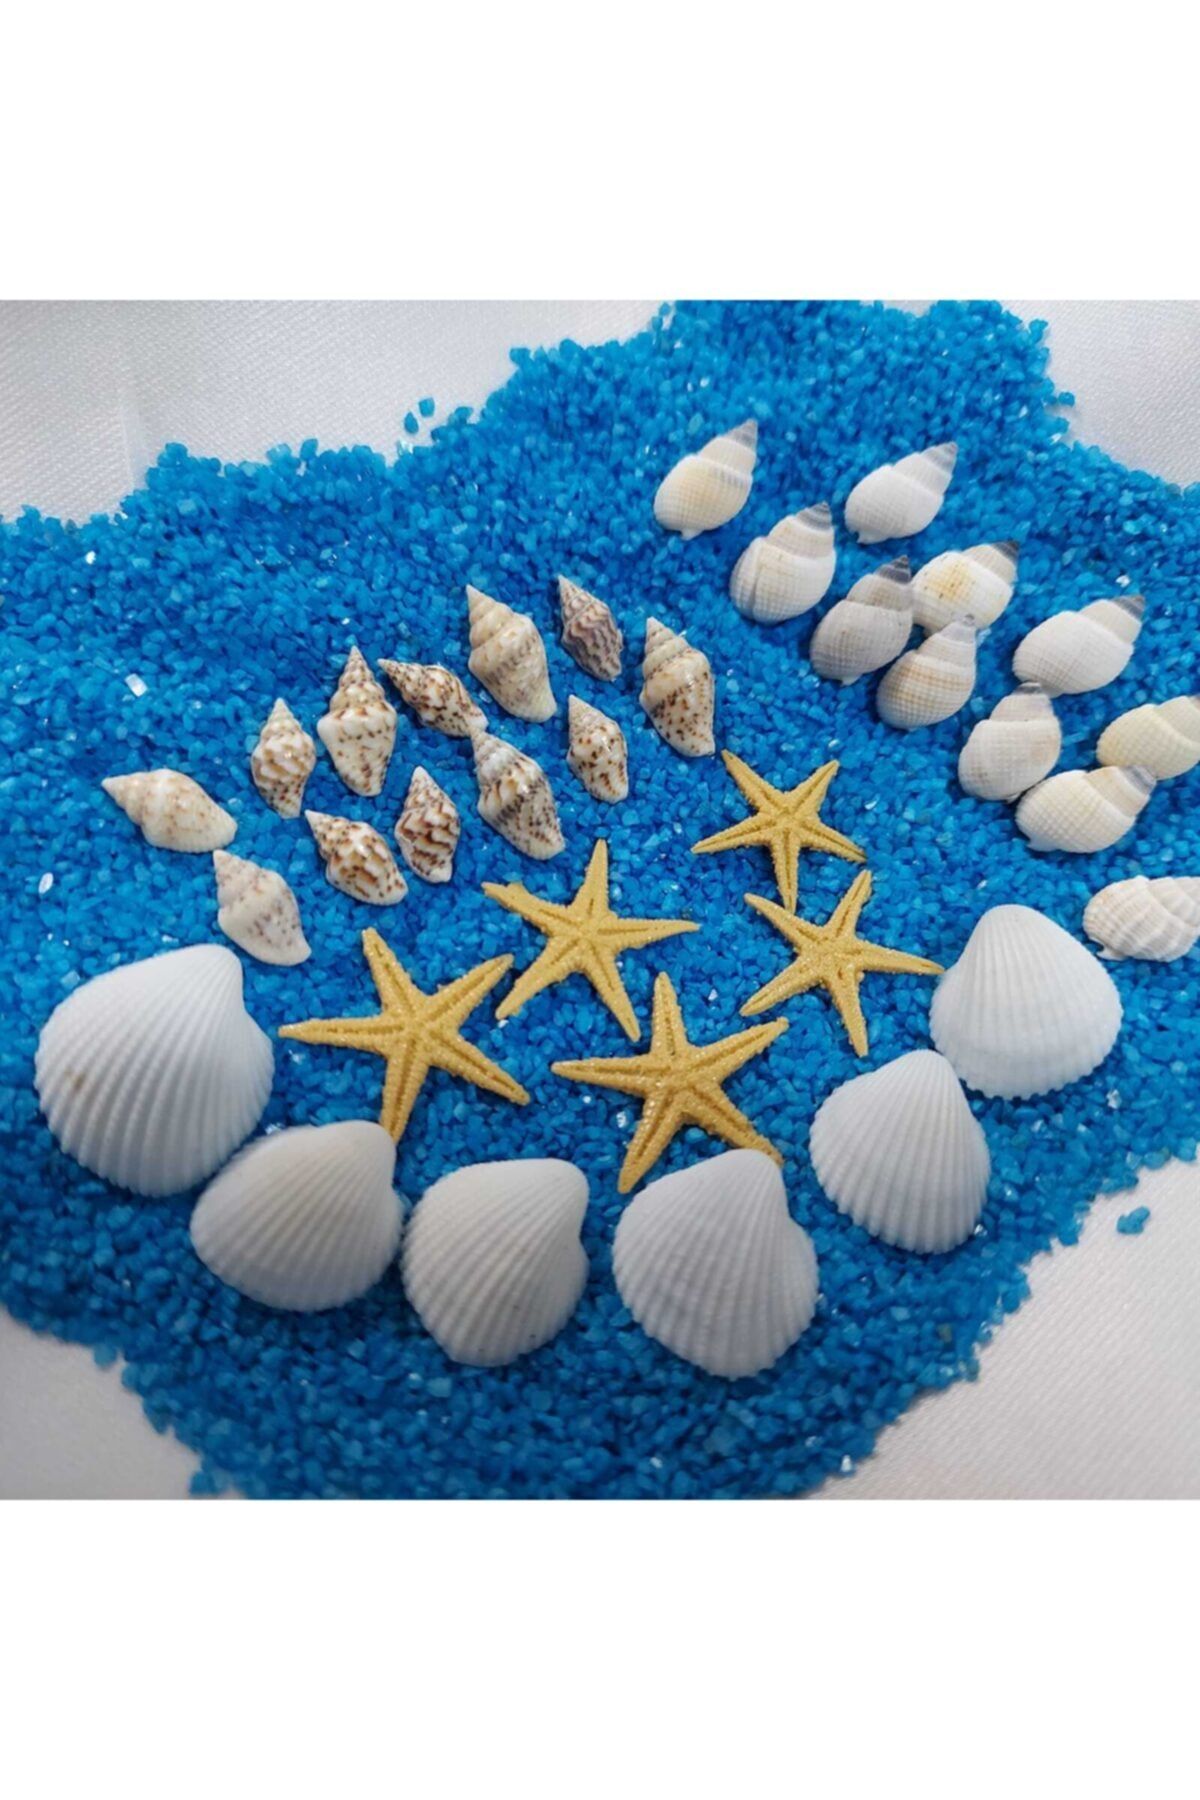 Aker Hediyelik Deniz Kabukları Silis Kabuk 07mm-2,5cm Dekor Deniz Kabuğu 500gr + 500gr Teraryum Mavi Kum+yıldız